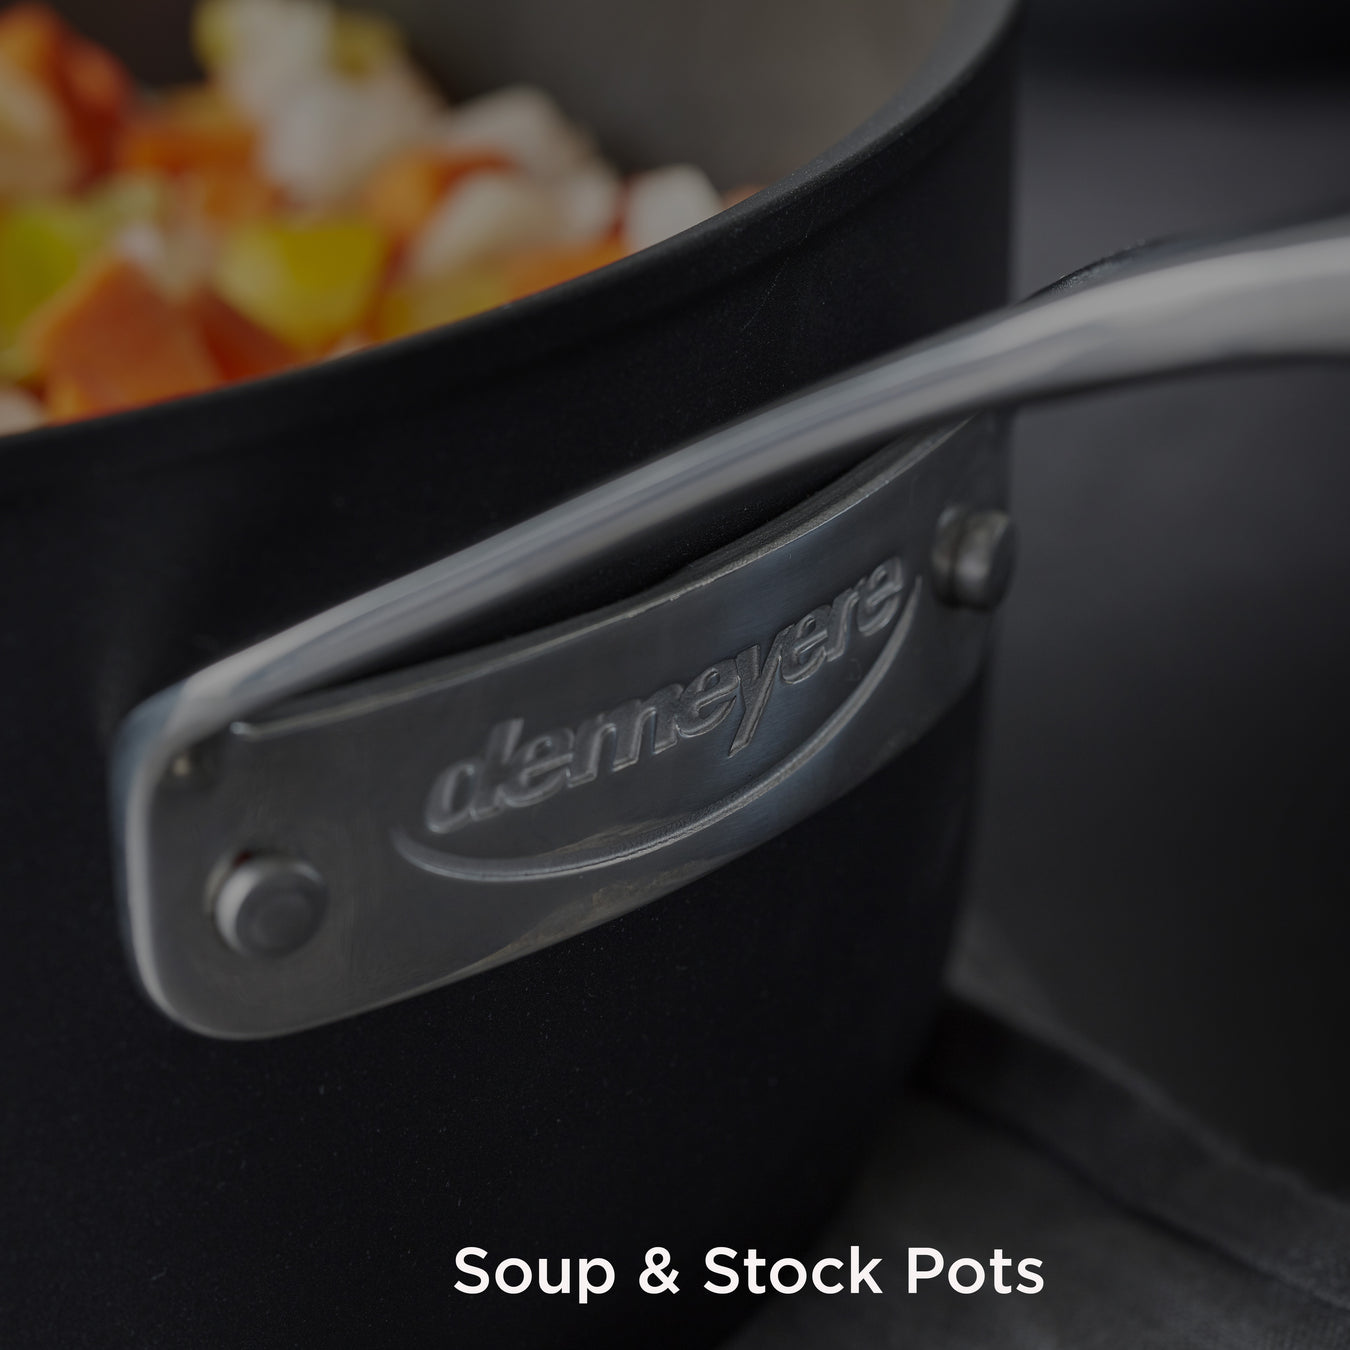 Soup & Stock Pots